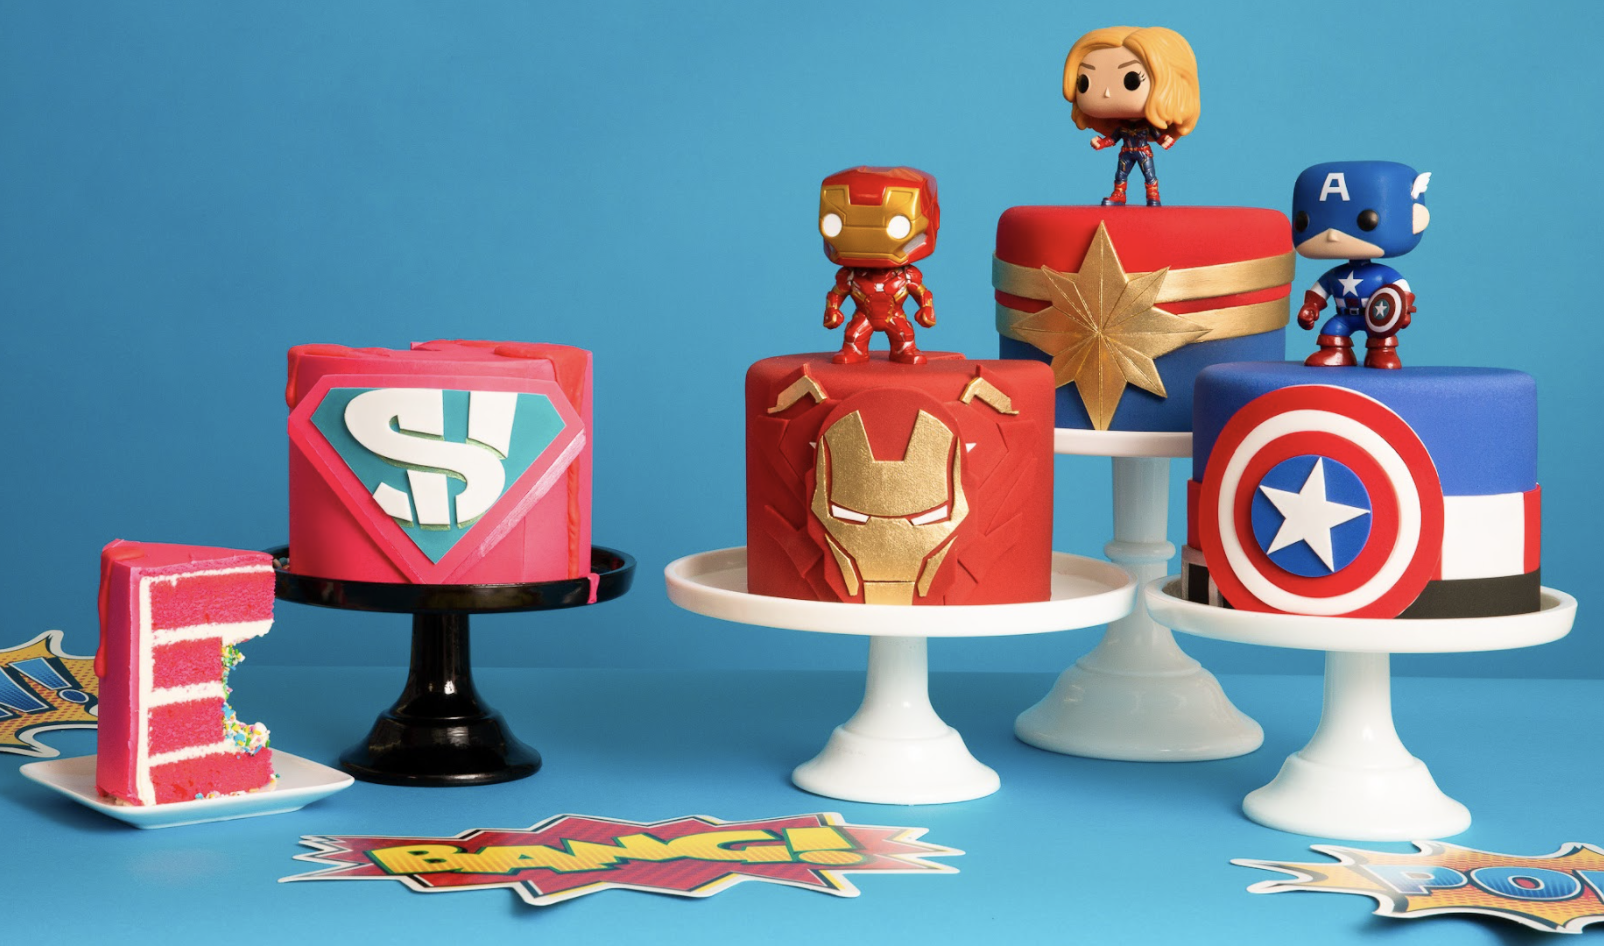 Avenger Theme Cake Designs & Images